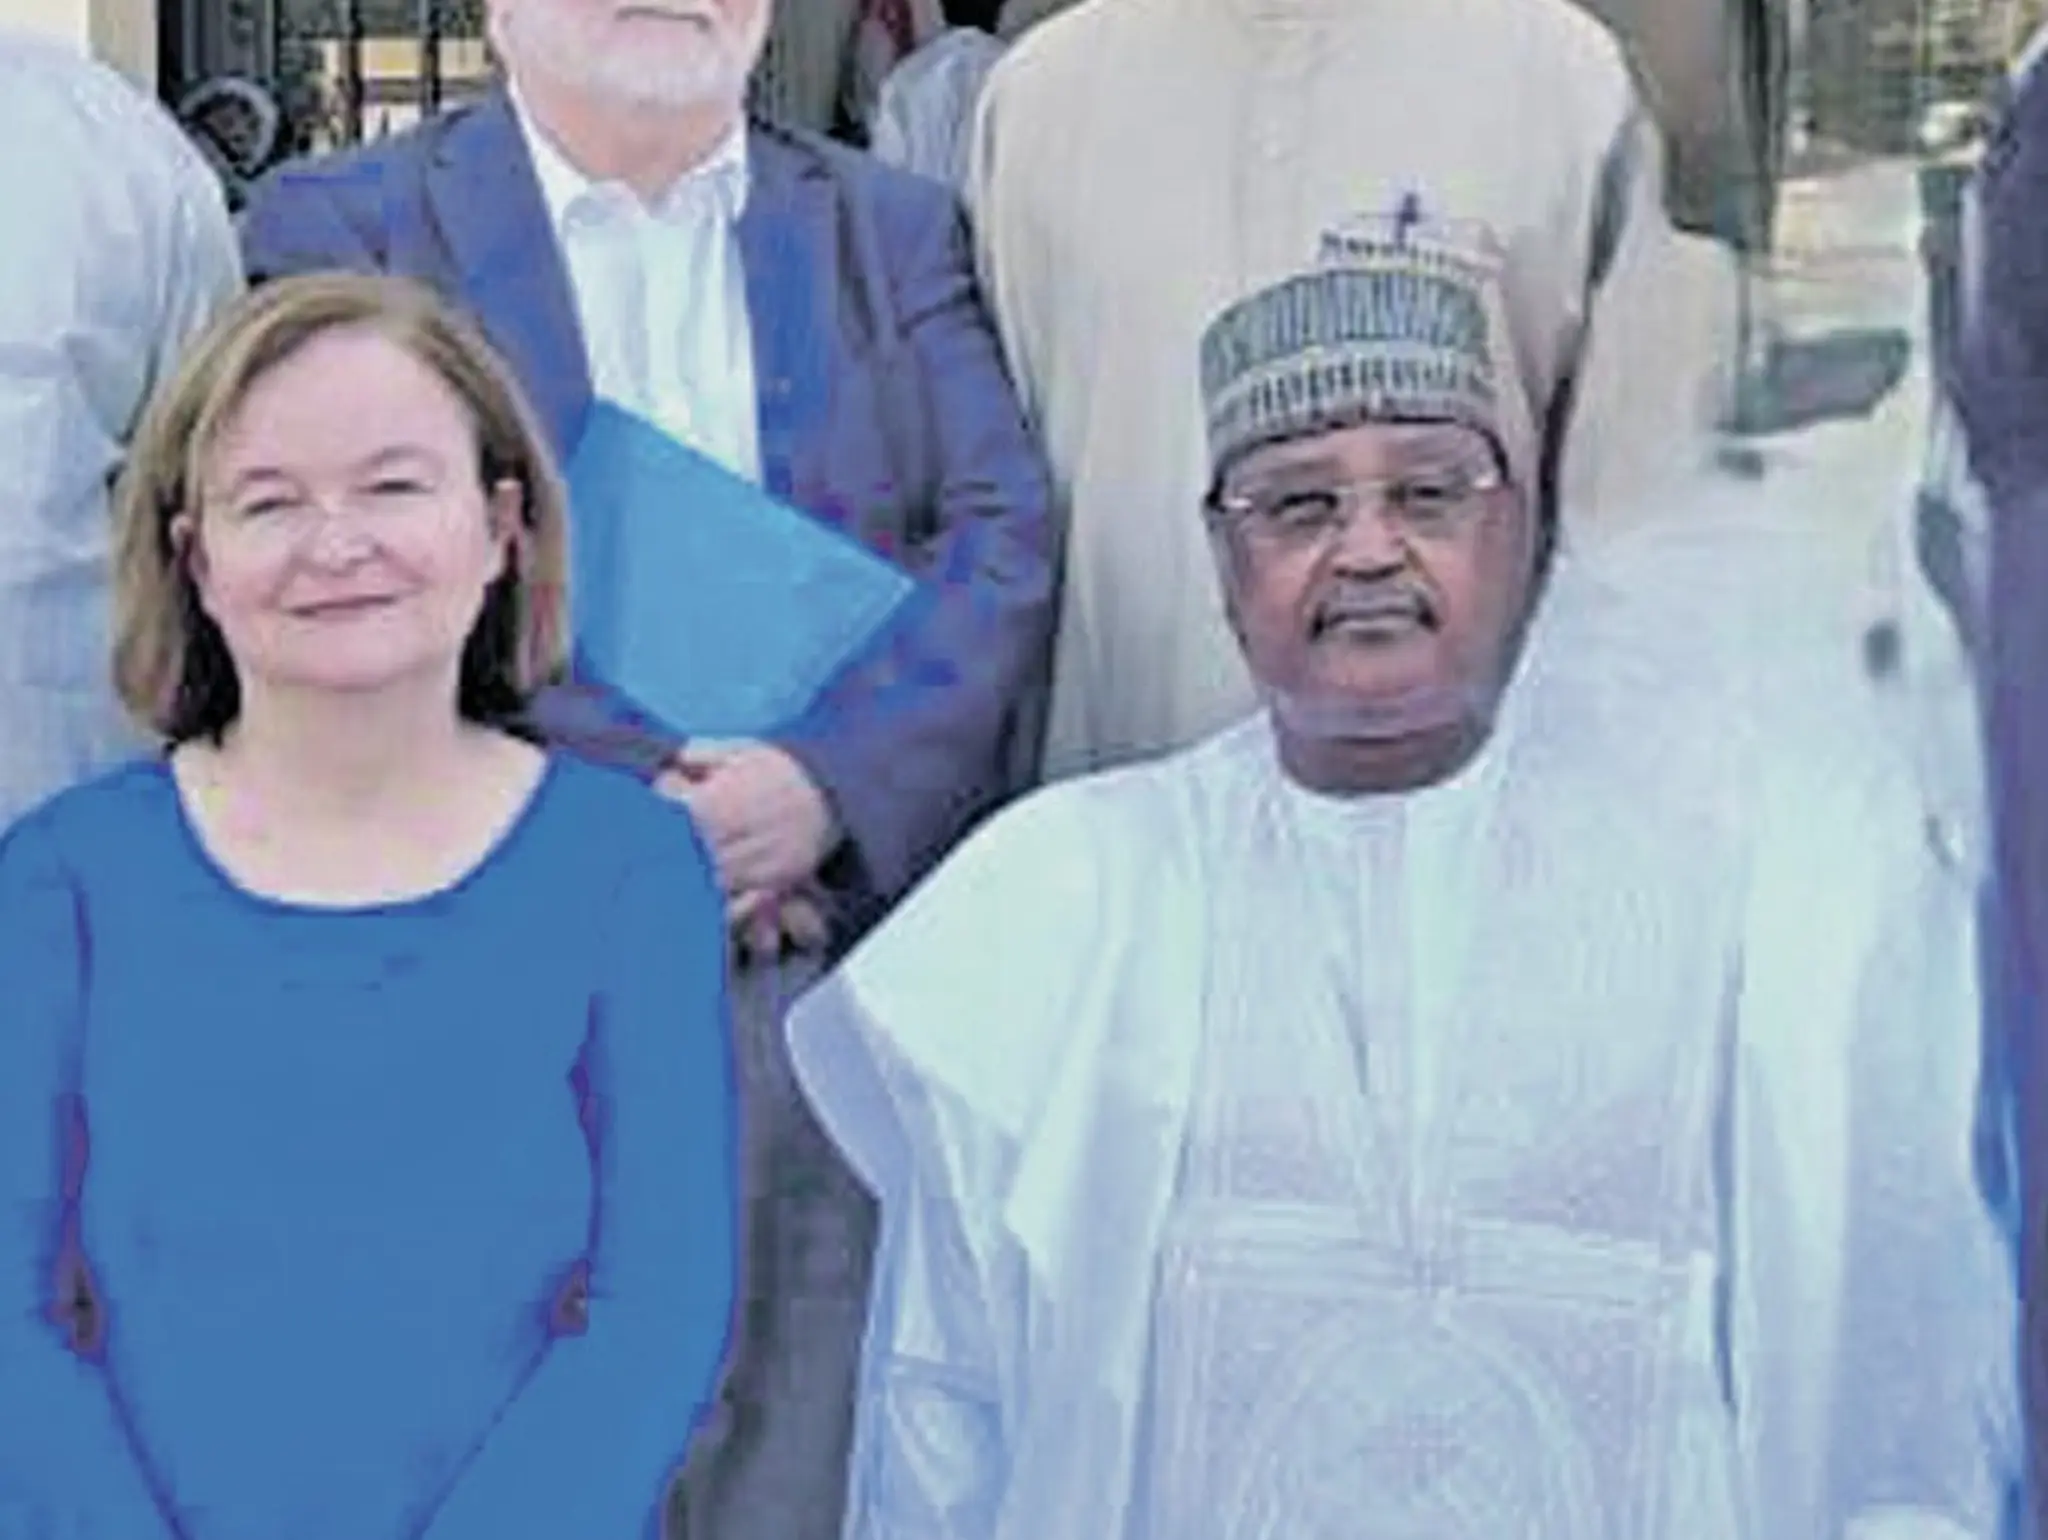 DK-s politikustól kért segítséget a megpuccsolt nigeri elnök